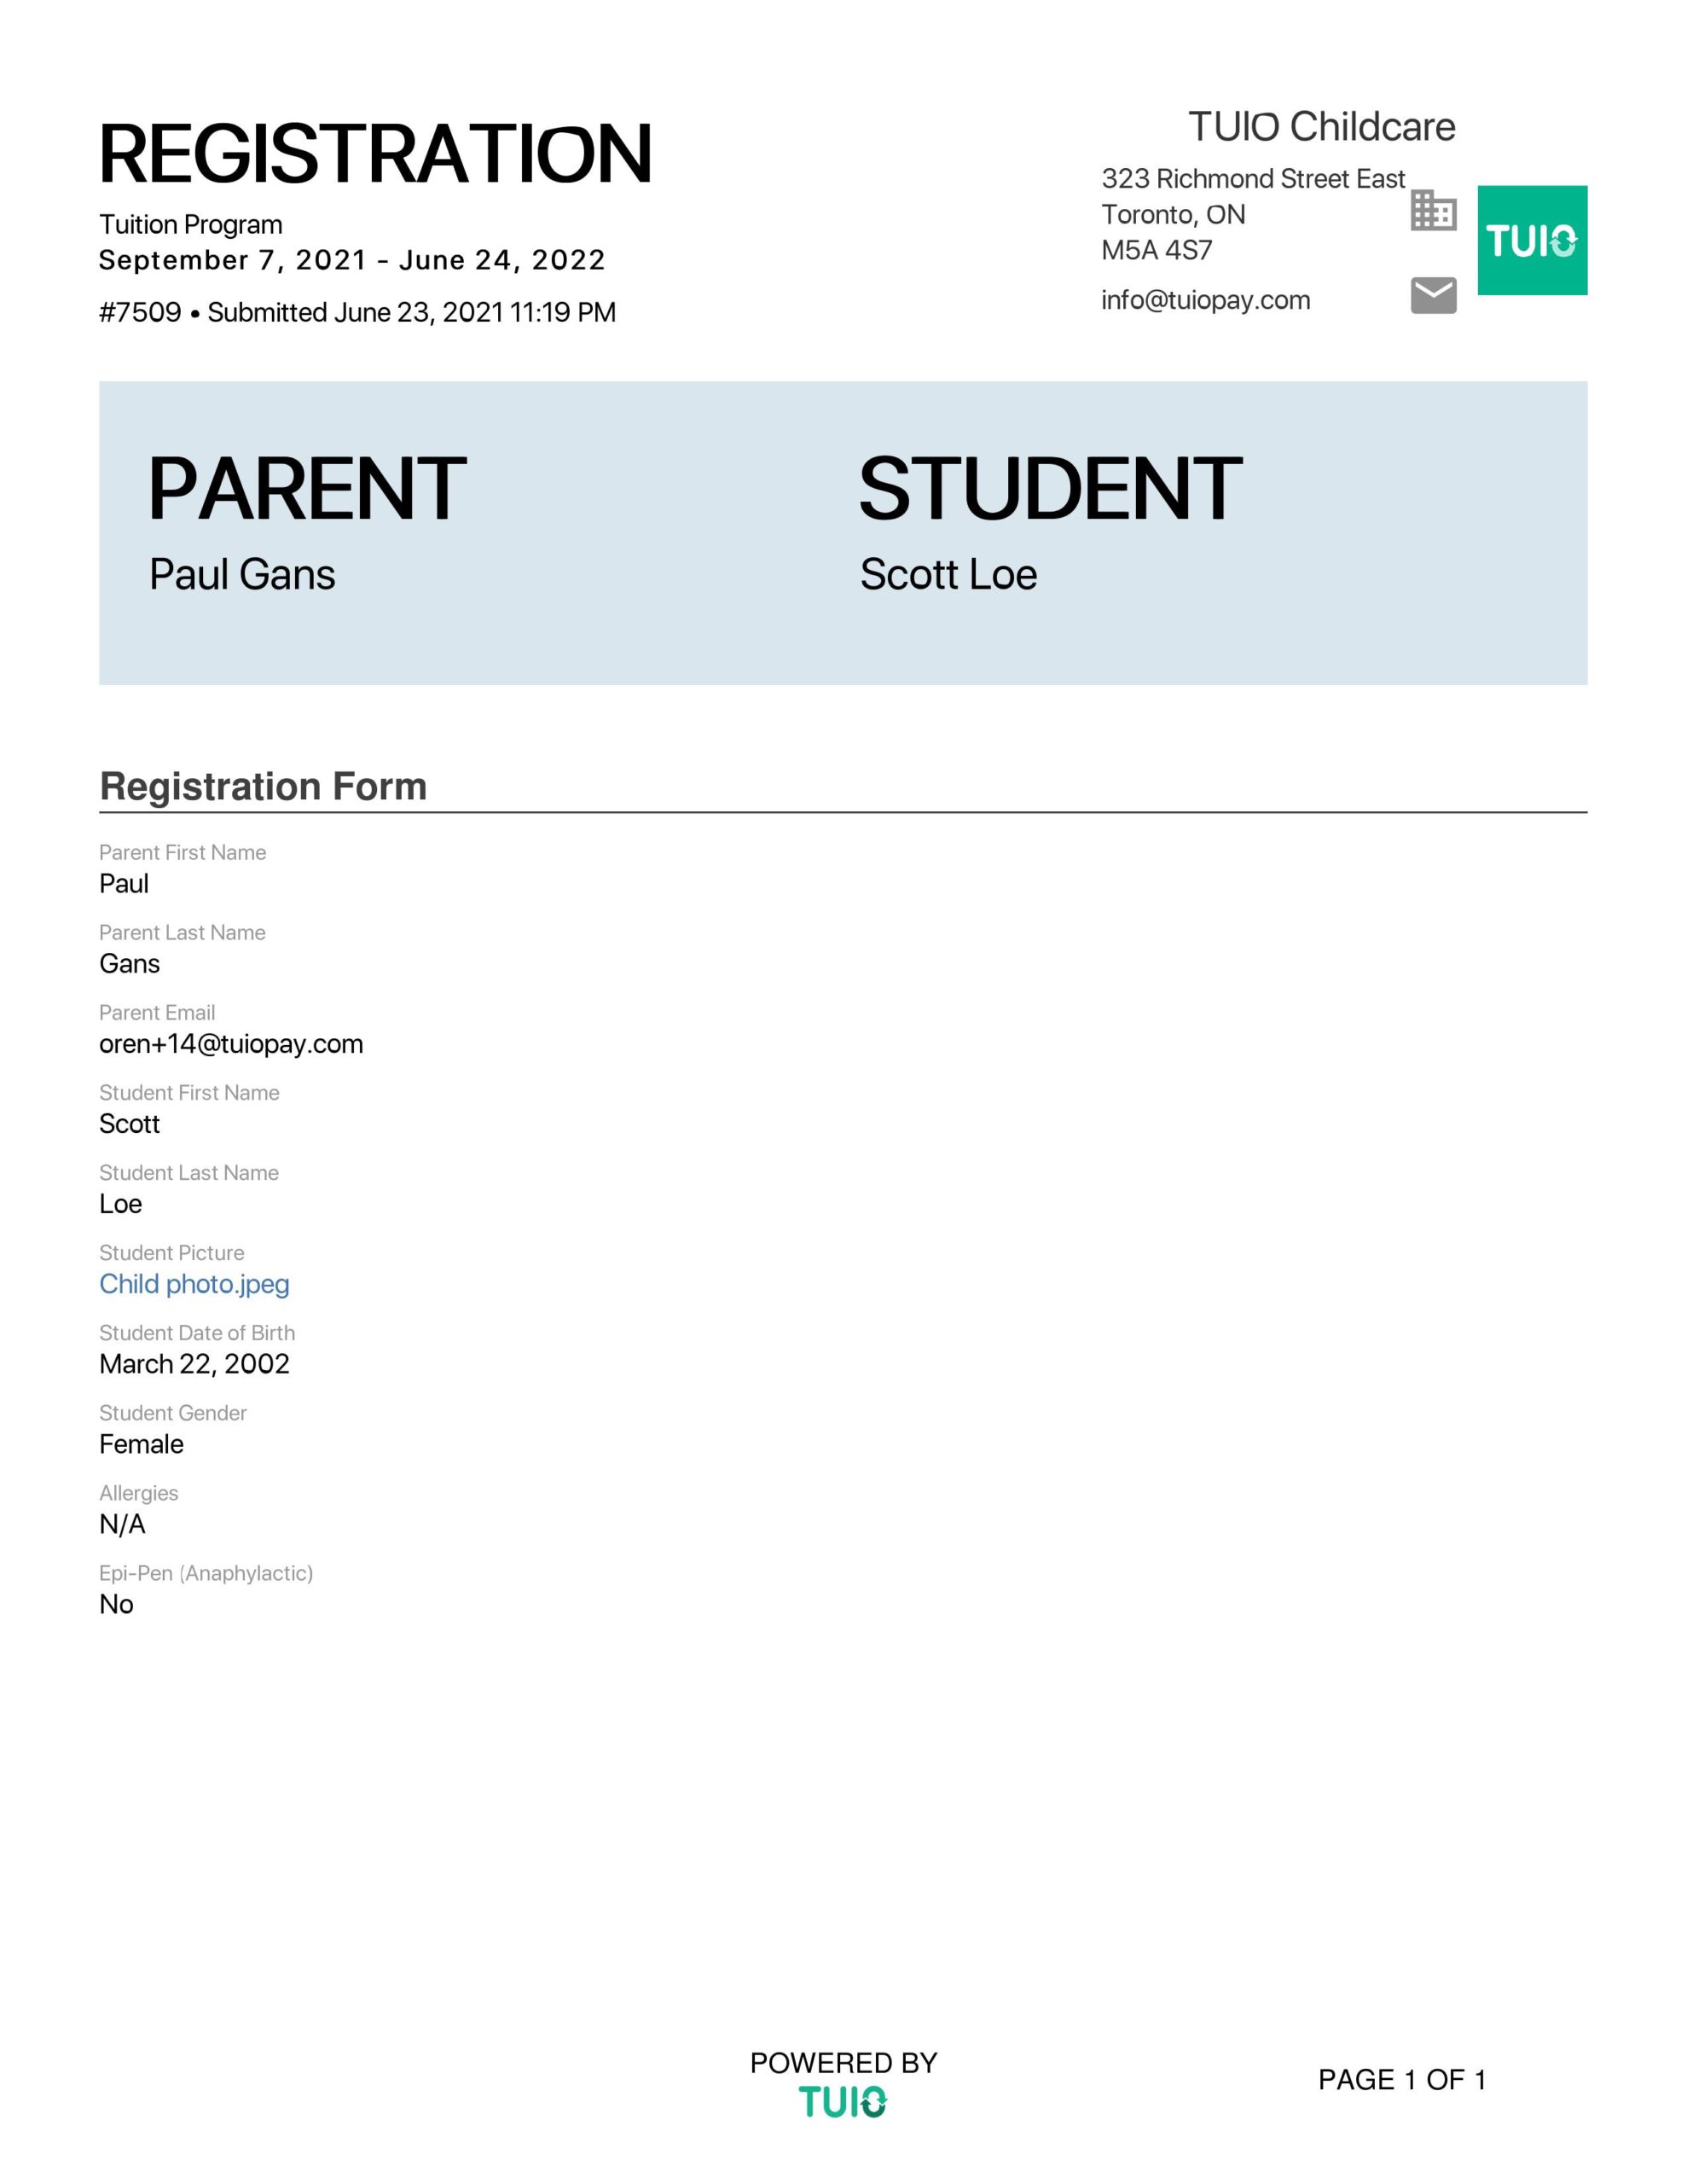 free-sample-student-registration-form